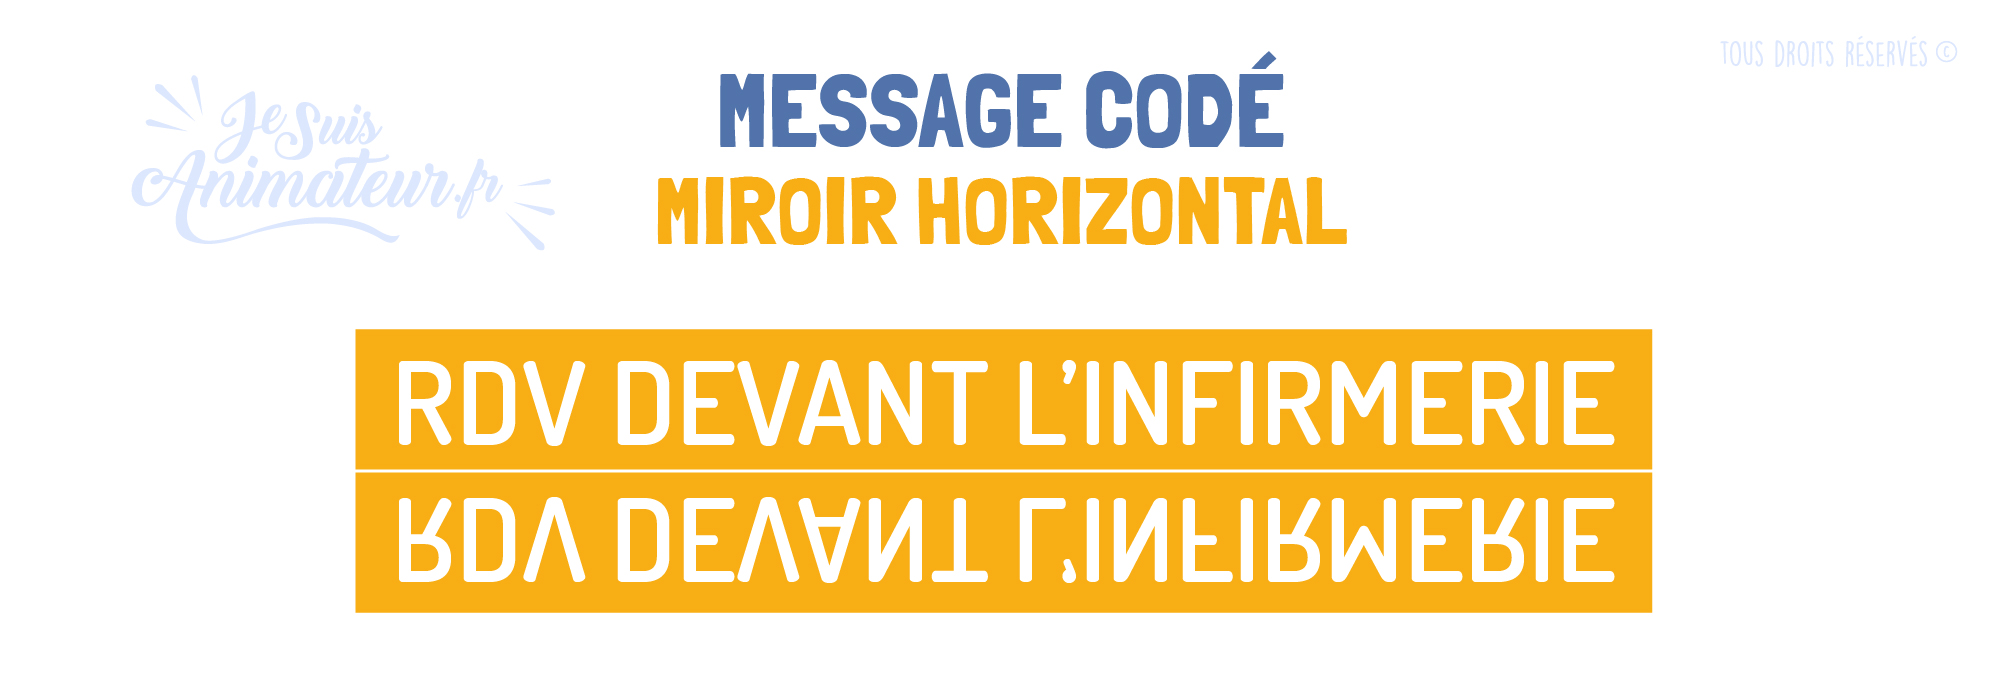 Message codé « Miroir horizontal »